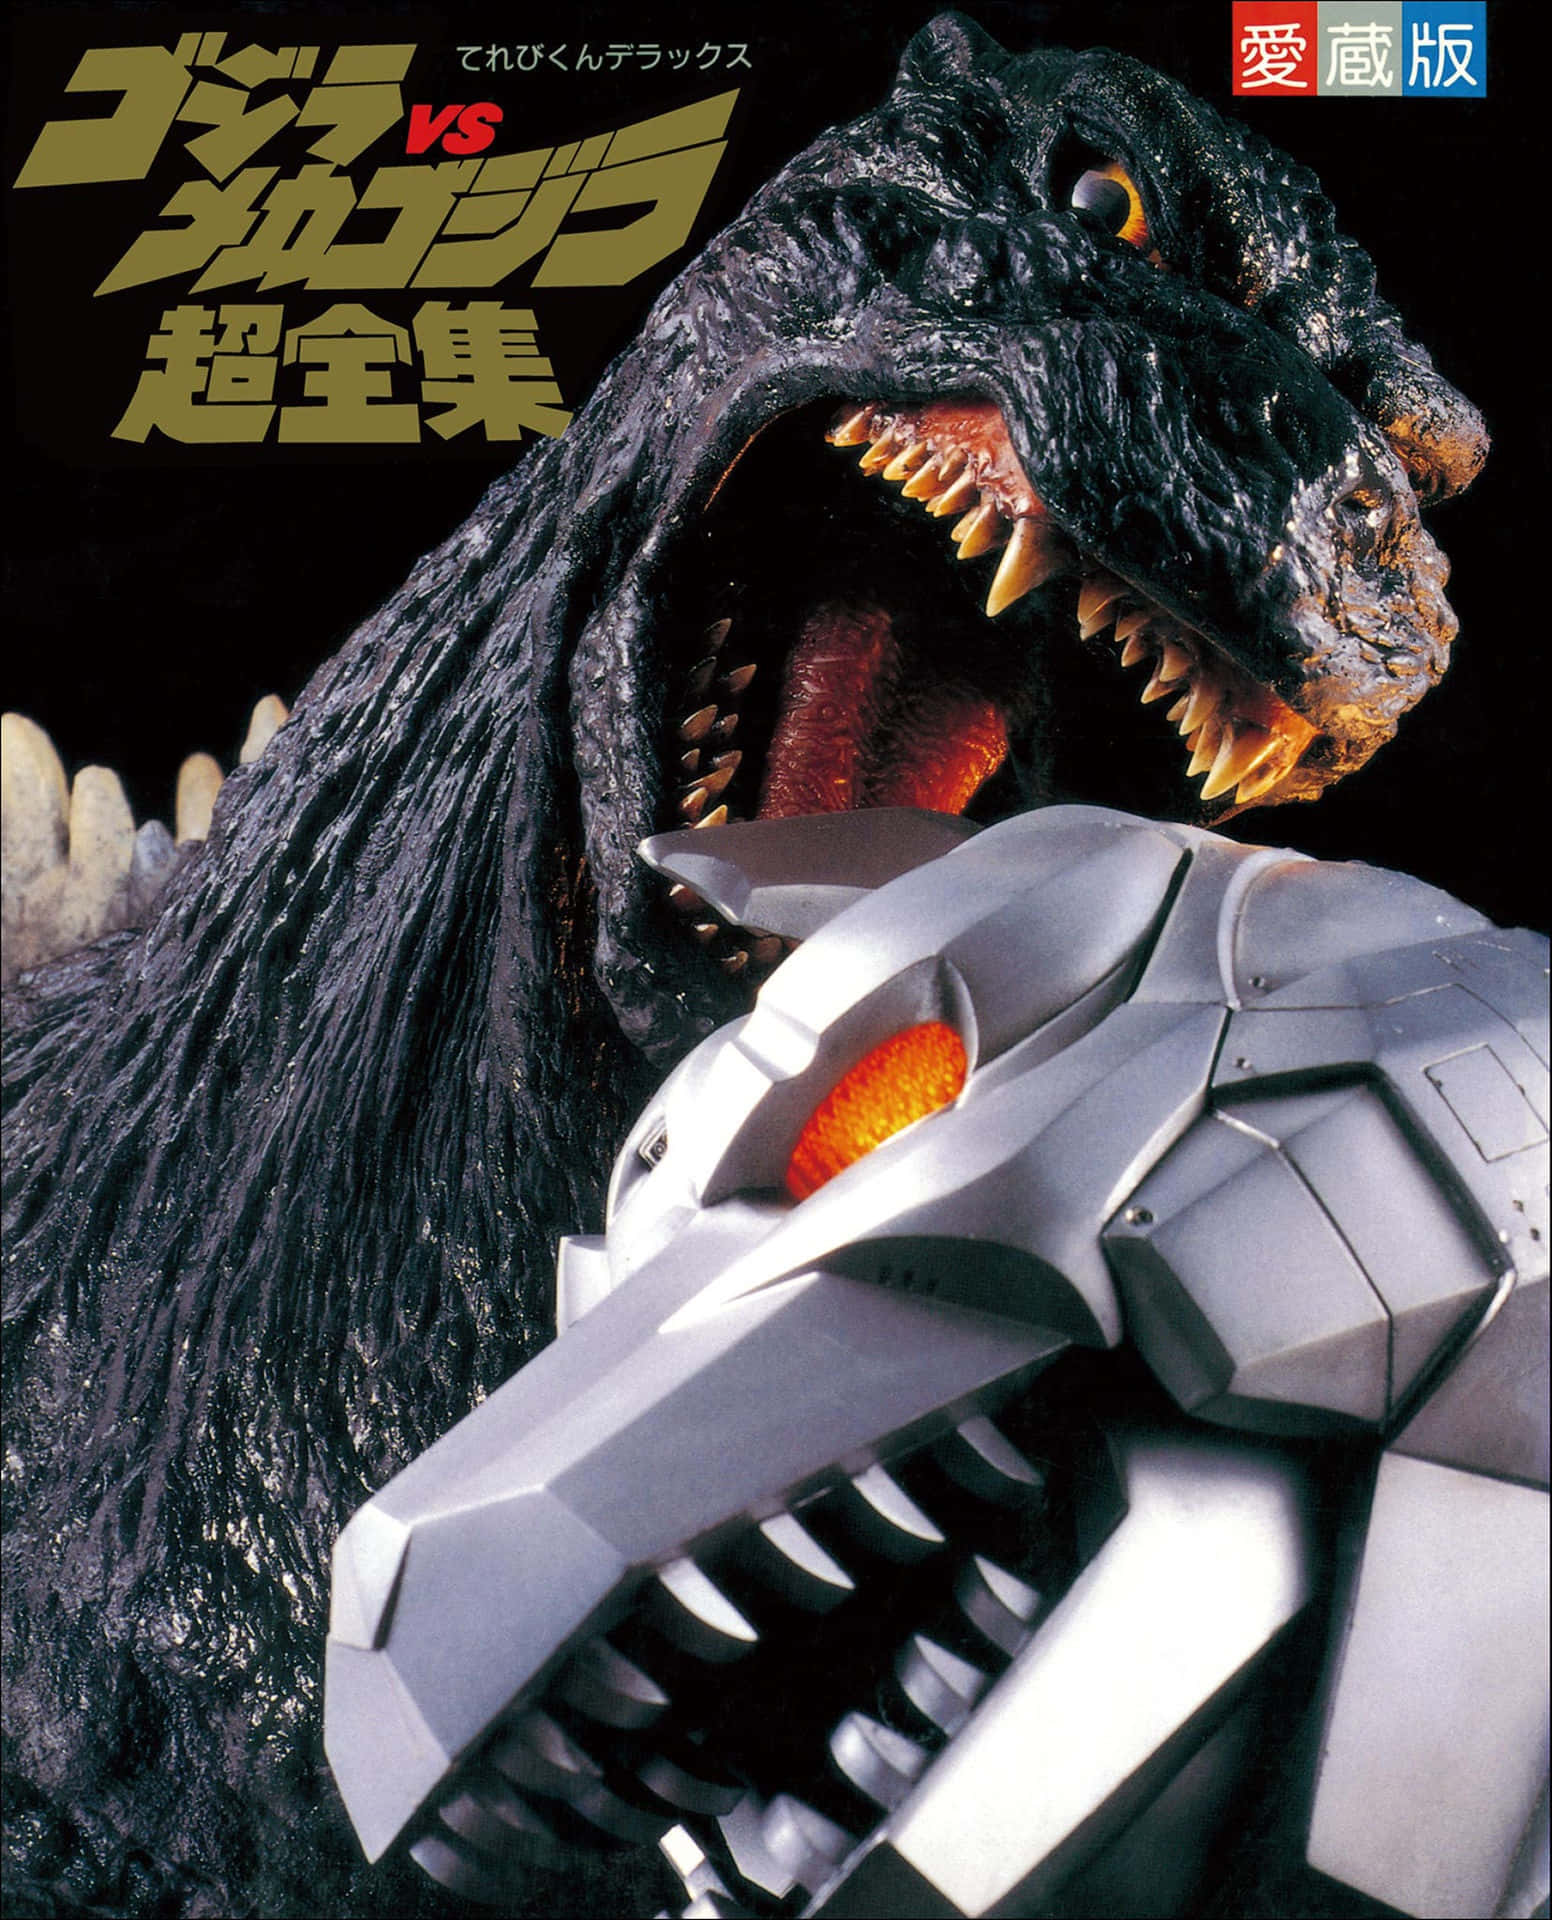 Épicabatalla: Godzilla Vs Mechagodzilla En Un Enfrentamiento Ardiente. Fondo de pantalla